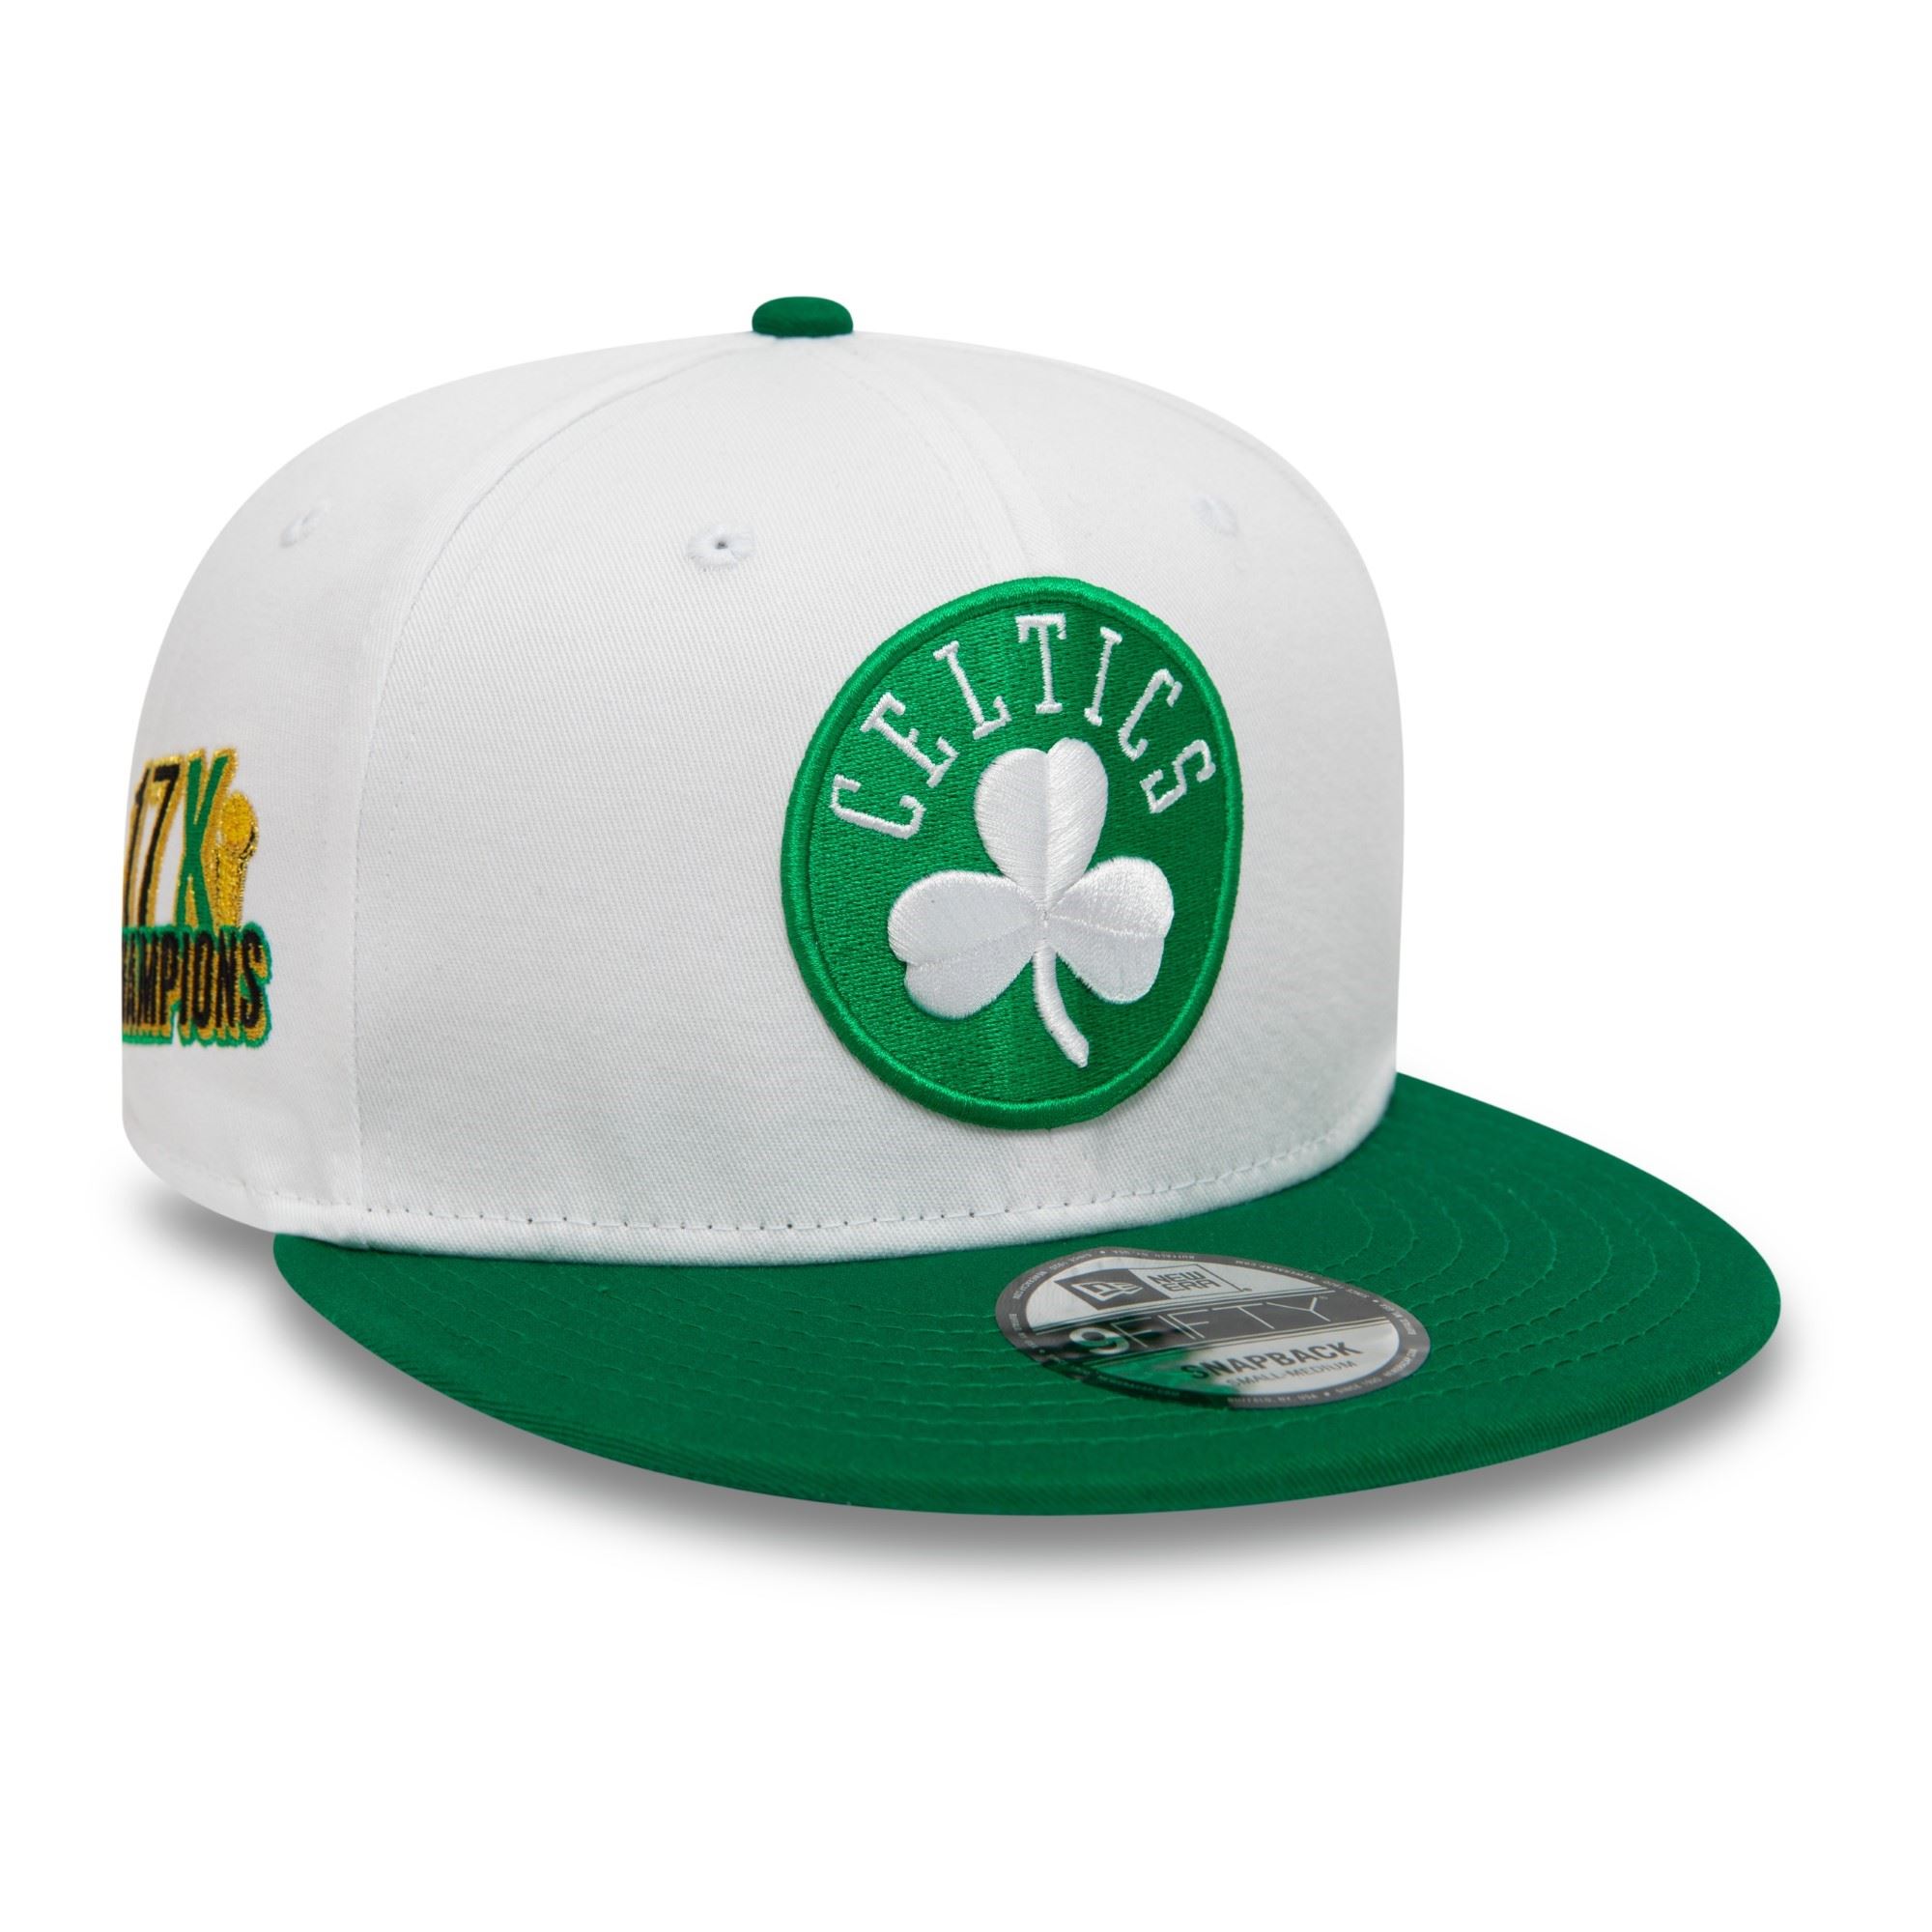 Boston Celtics NBA White Crown Patches White 9Fifty Snapback Cap New Era